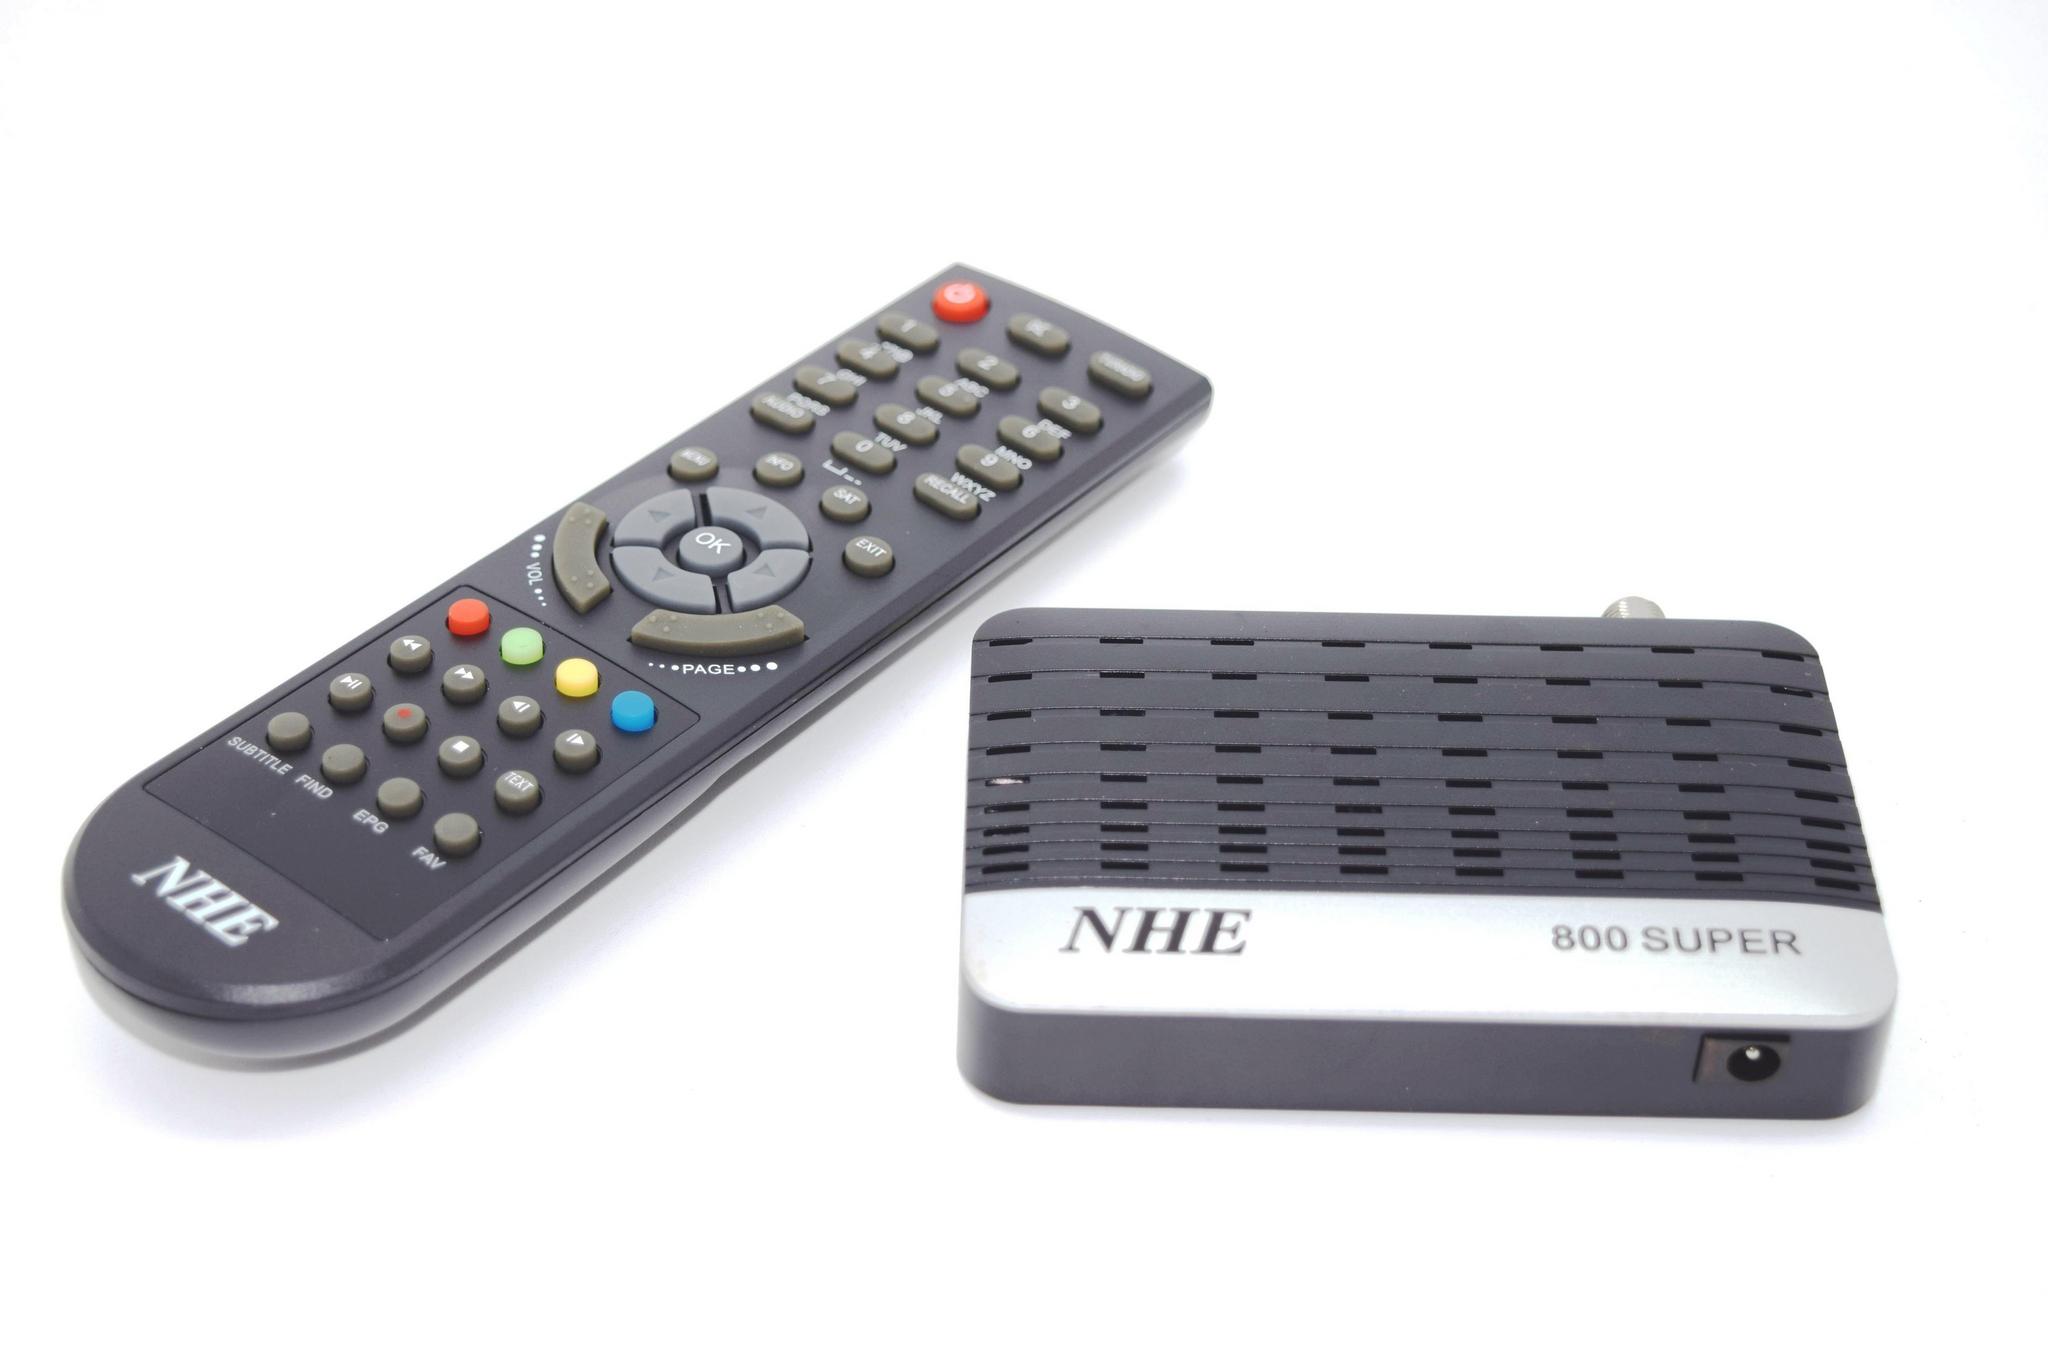 NHE Mini Full-HD Wifi Satellite Receiver - BLACK NHE800